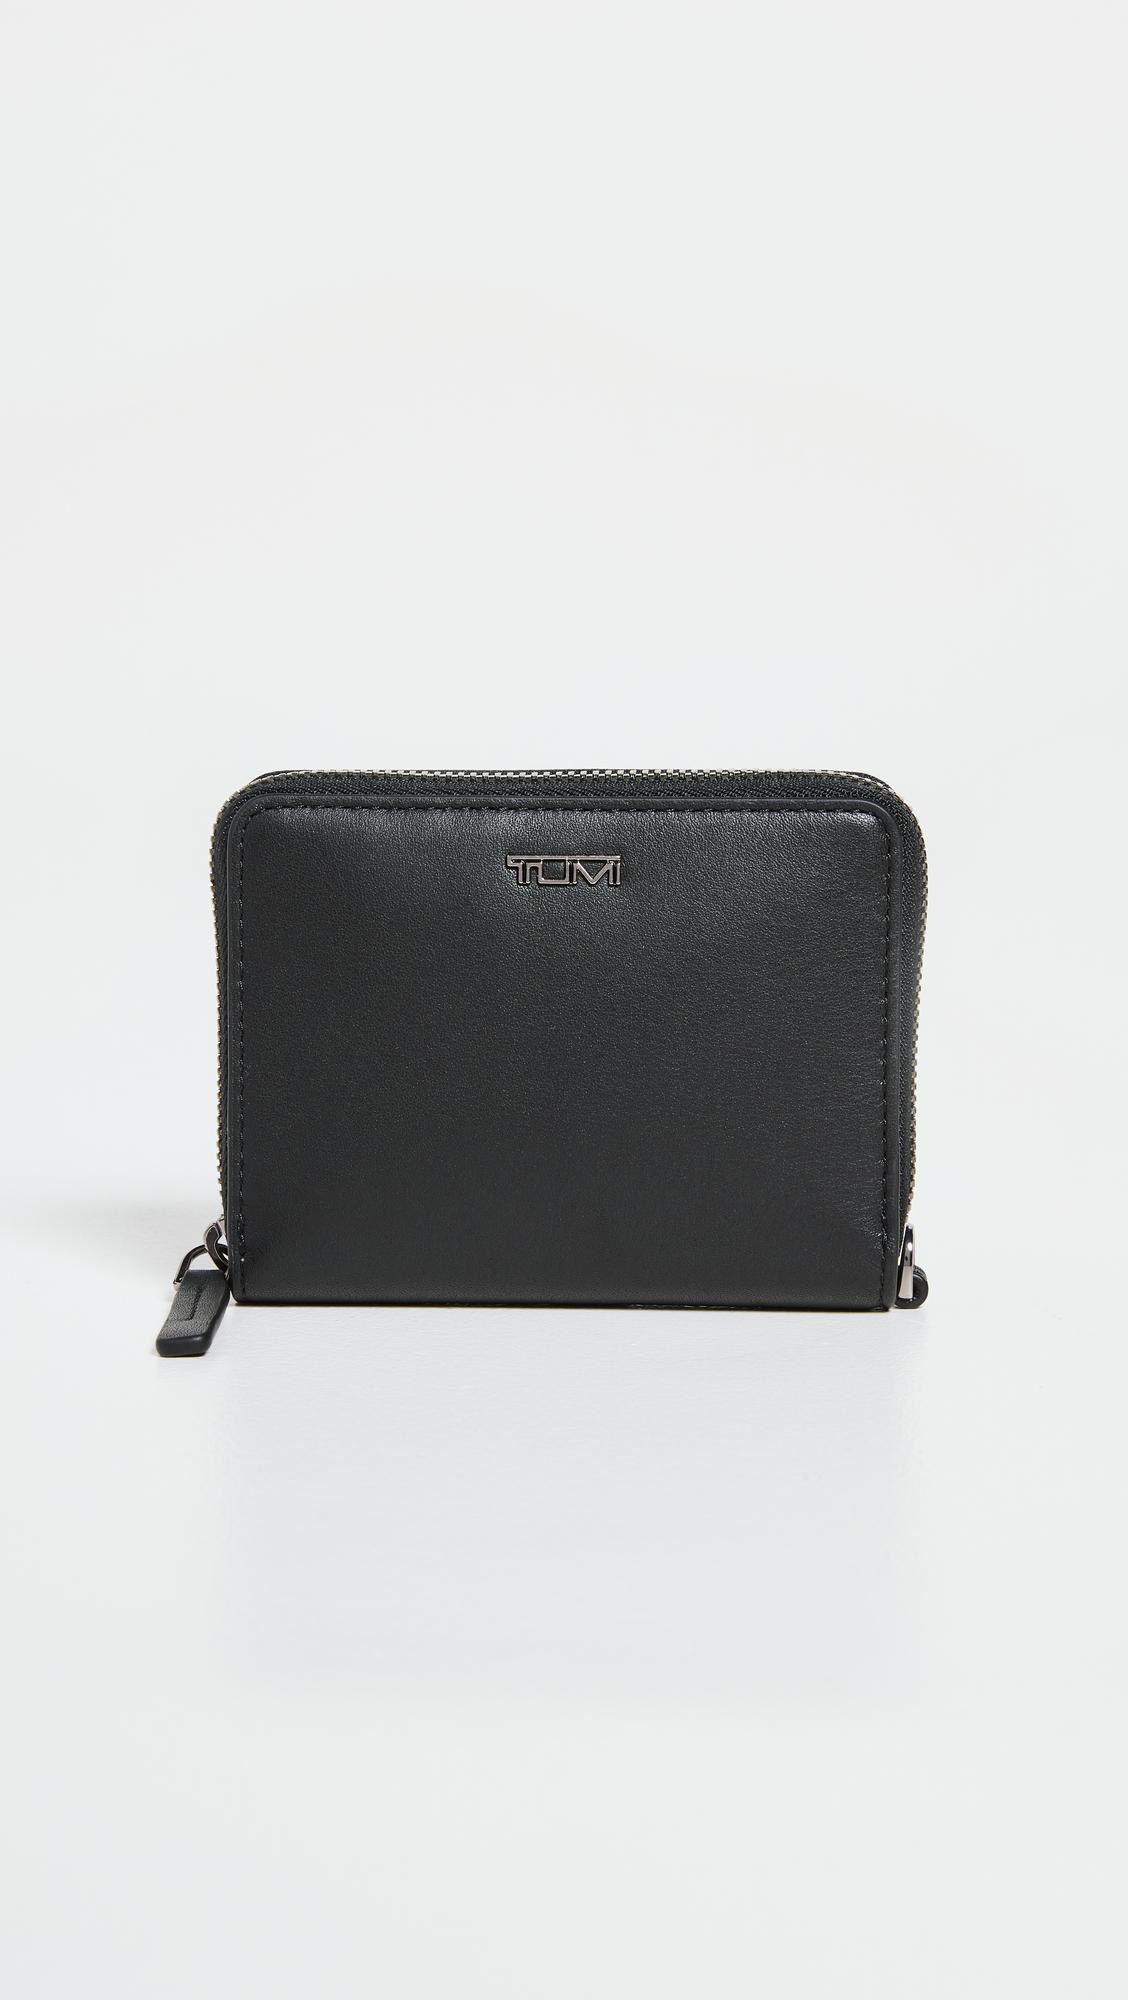 Tumi Tri-fold Zip-around Wallet in Black | Lyst